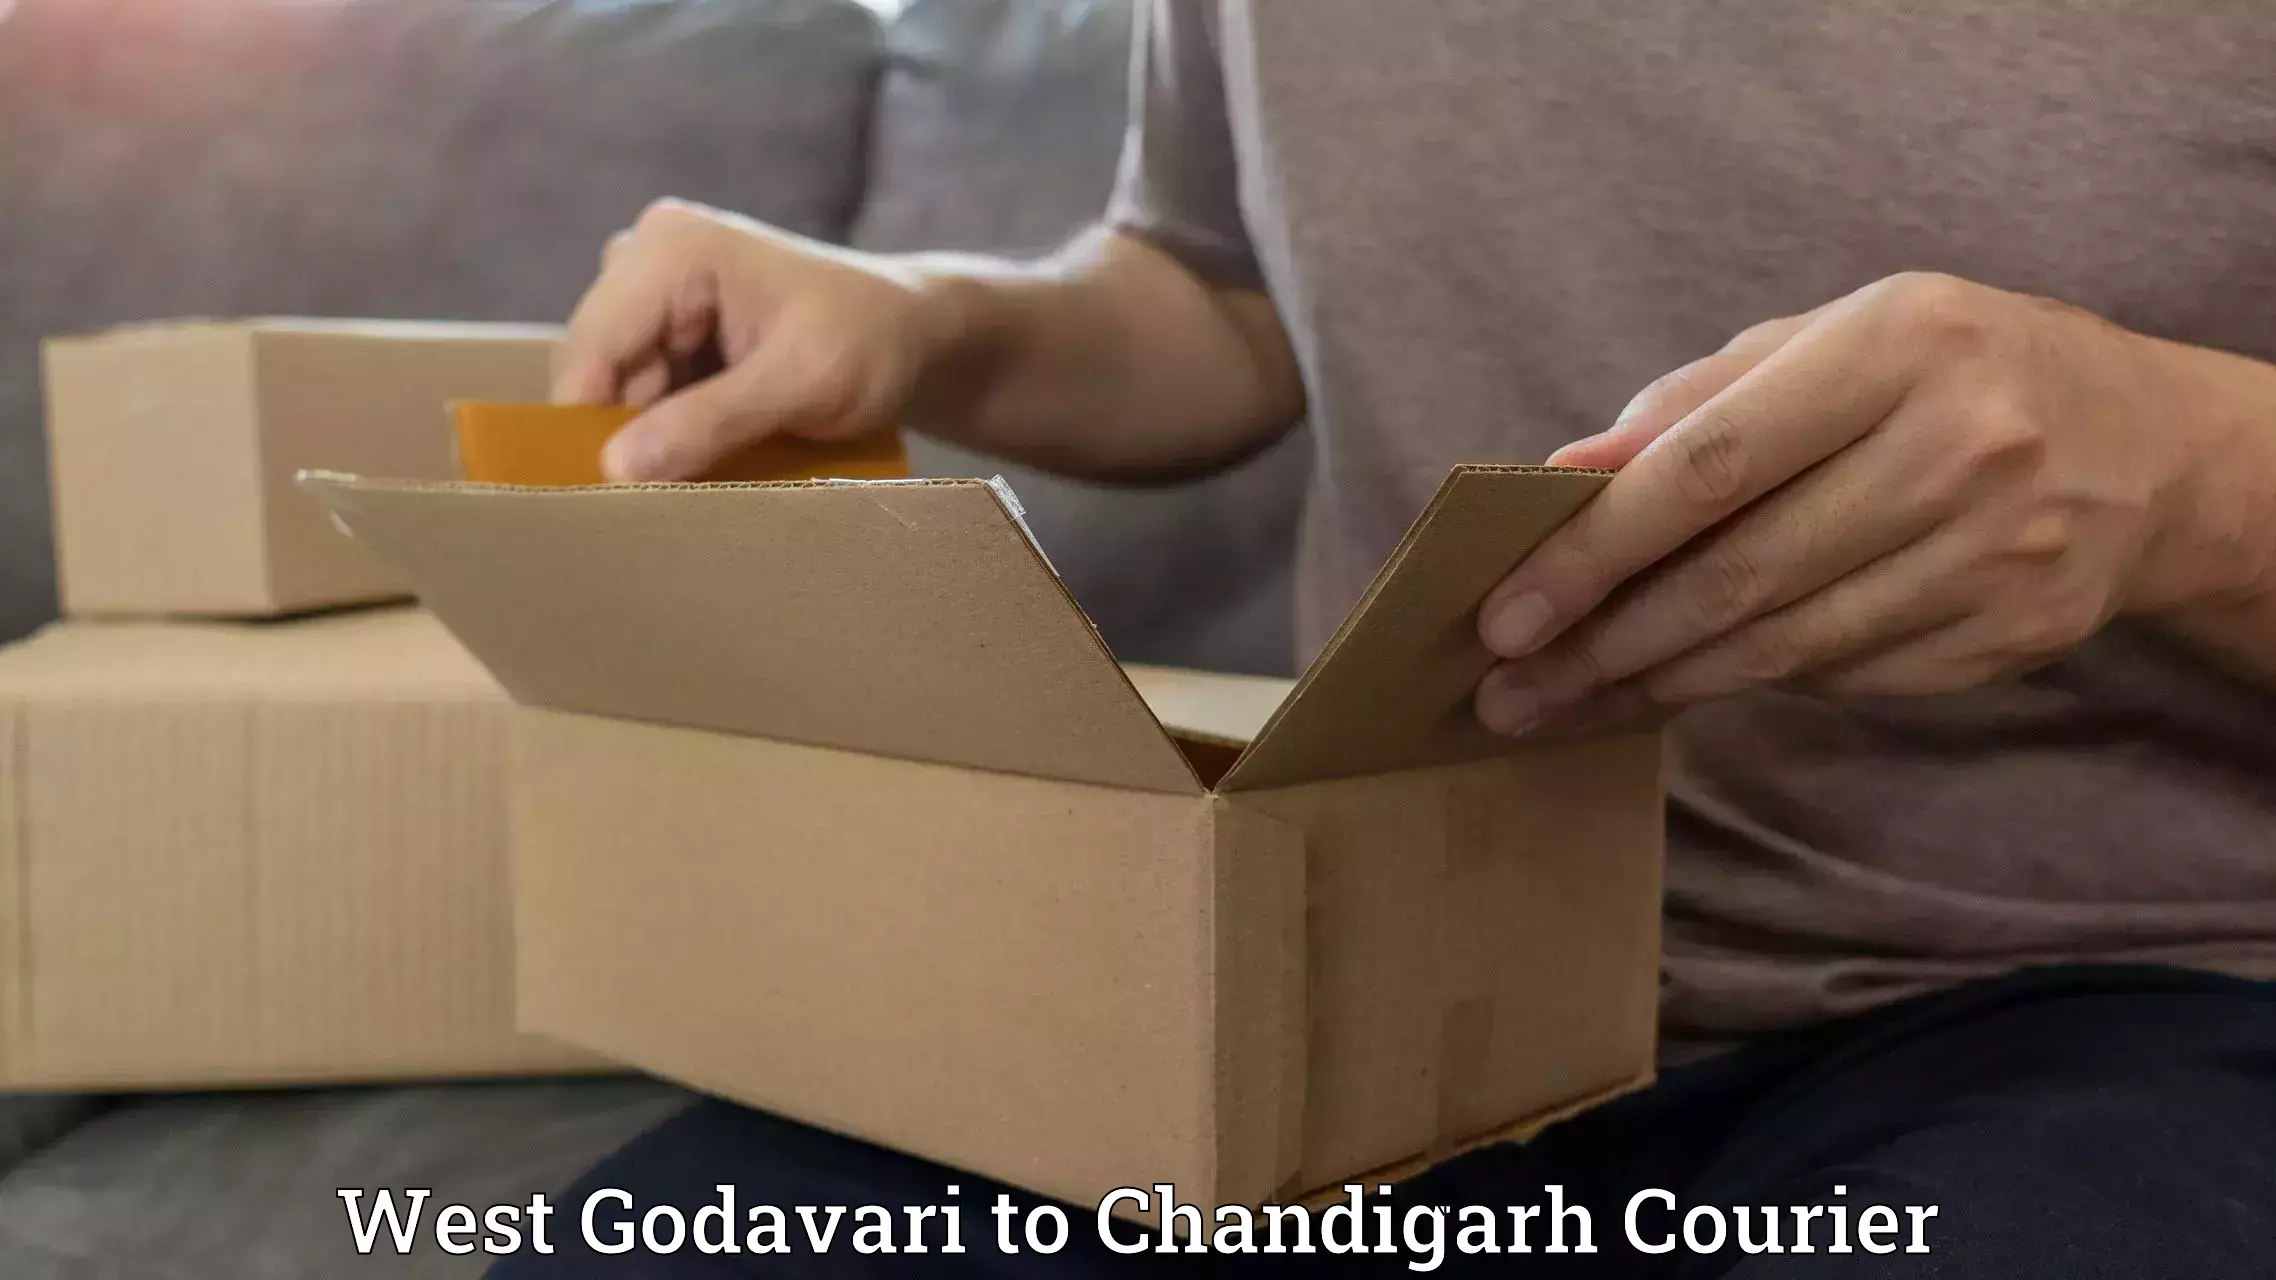 24/7 courier service West Godavari to Chandigarh